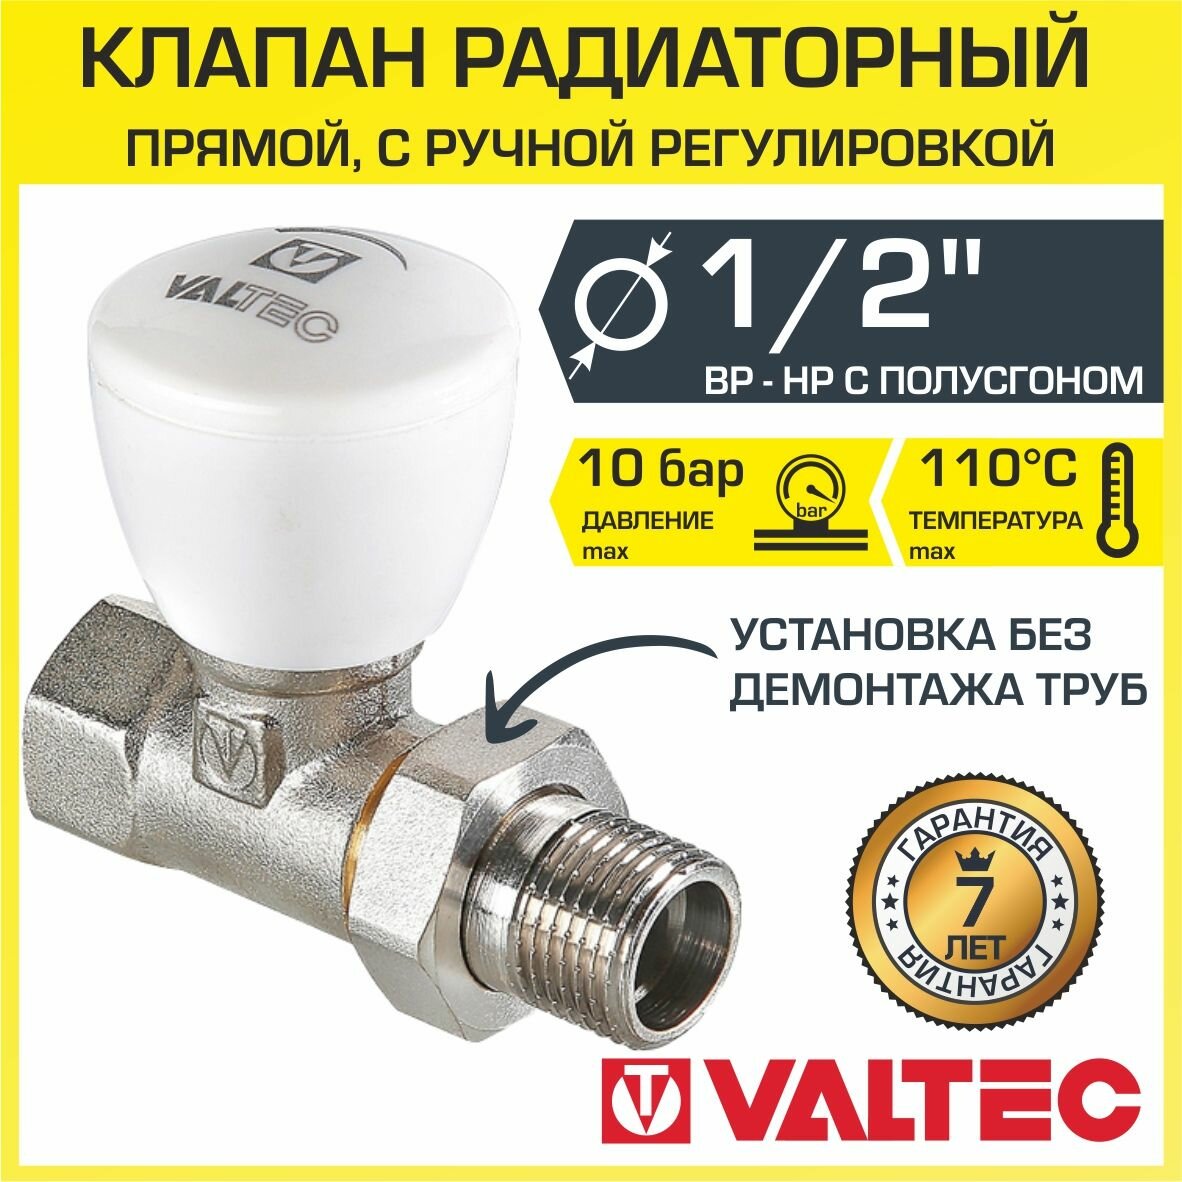 Клапан радиаторный прямой 1/2" вн.-нар. Kvs 04-18 VALTEC ручной с полусгоном / Компактный регулирующий вентиль ДУ 15 для радиатора VT.008. N.04